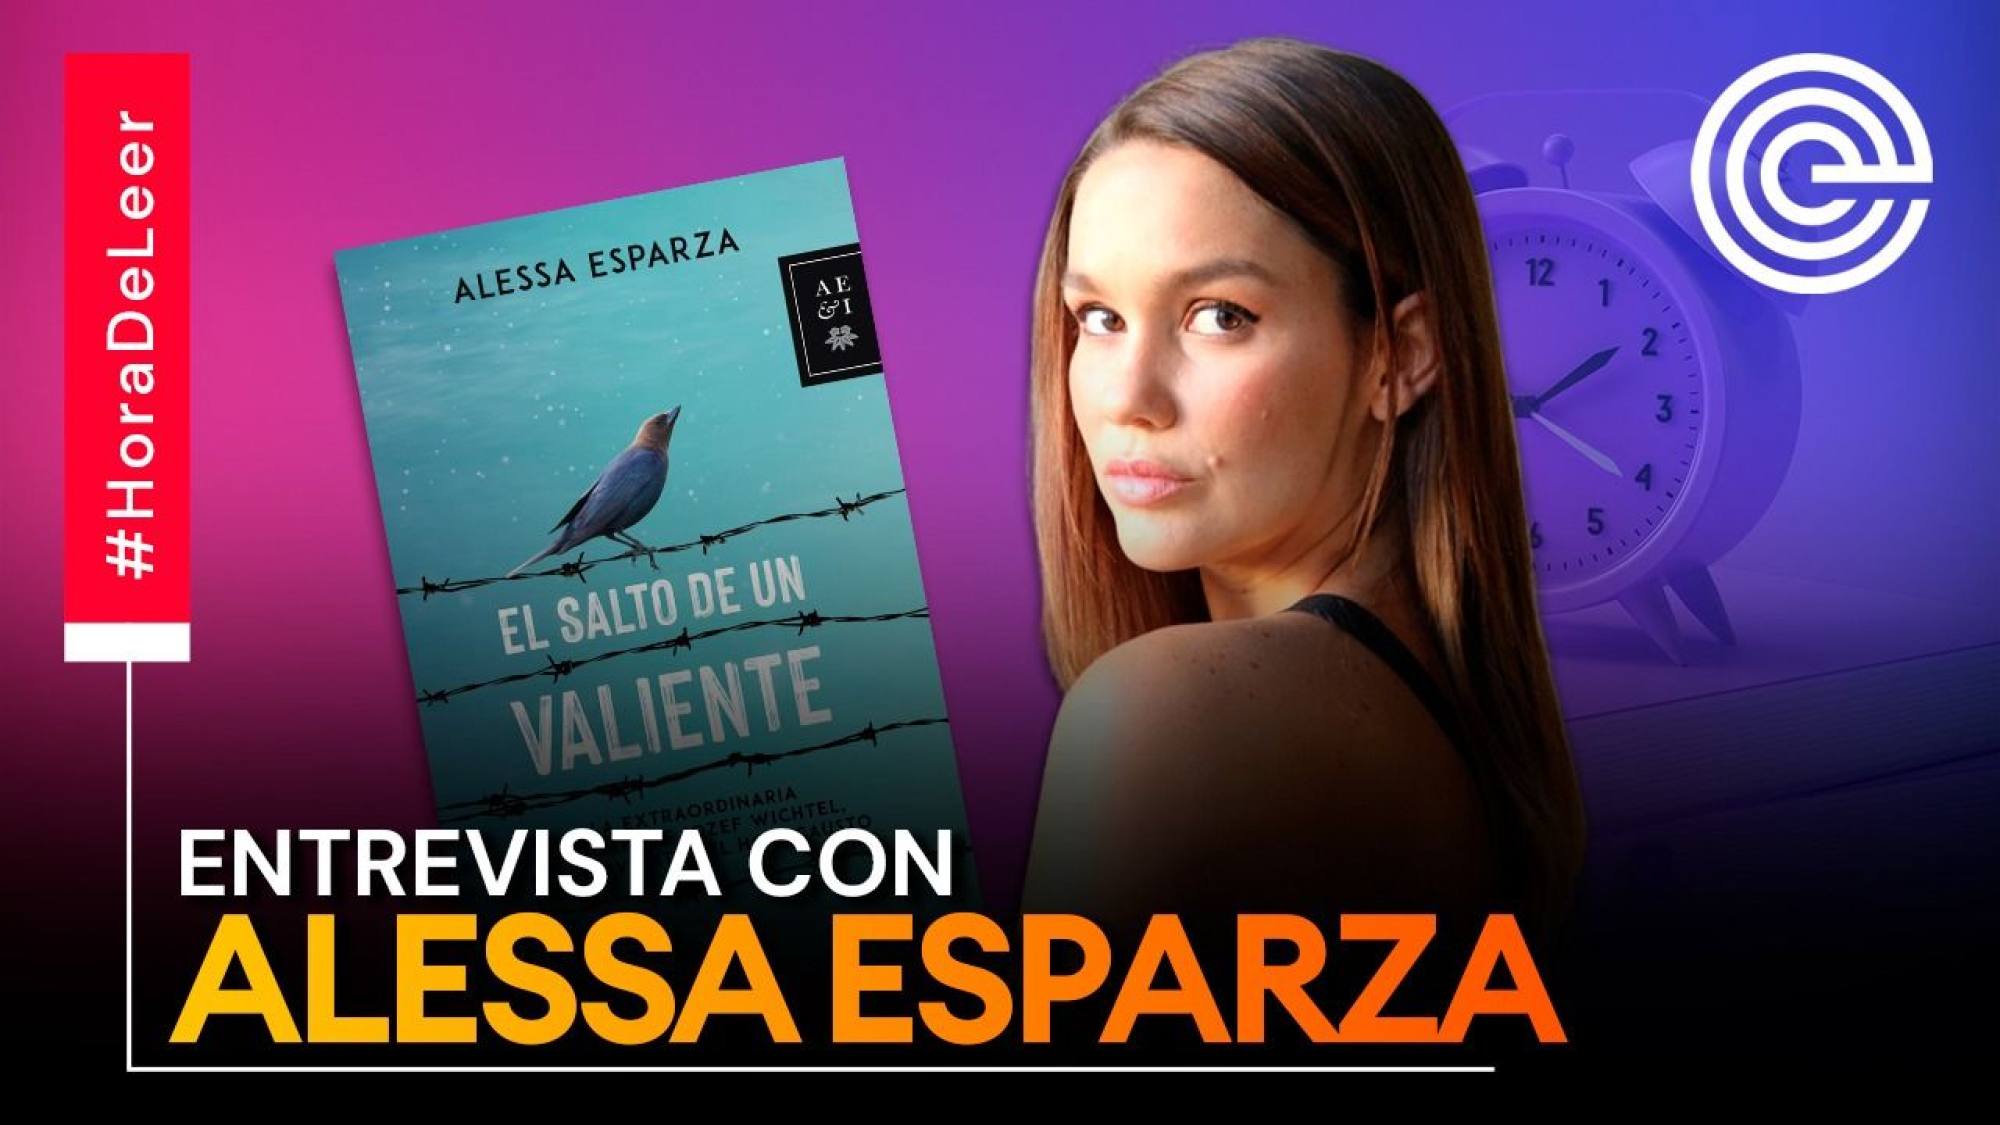 Alessa Esparza presenta 'El salto de un valiente', Epicentro TV